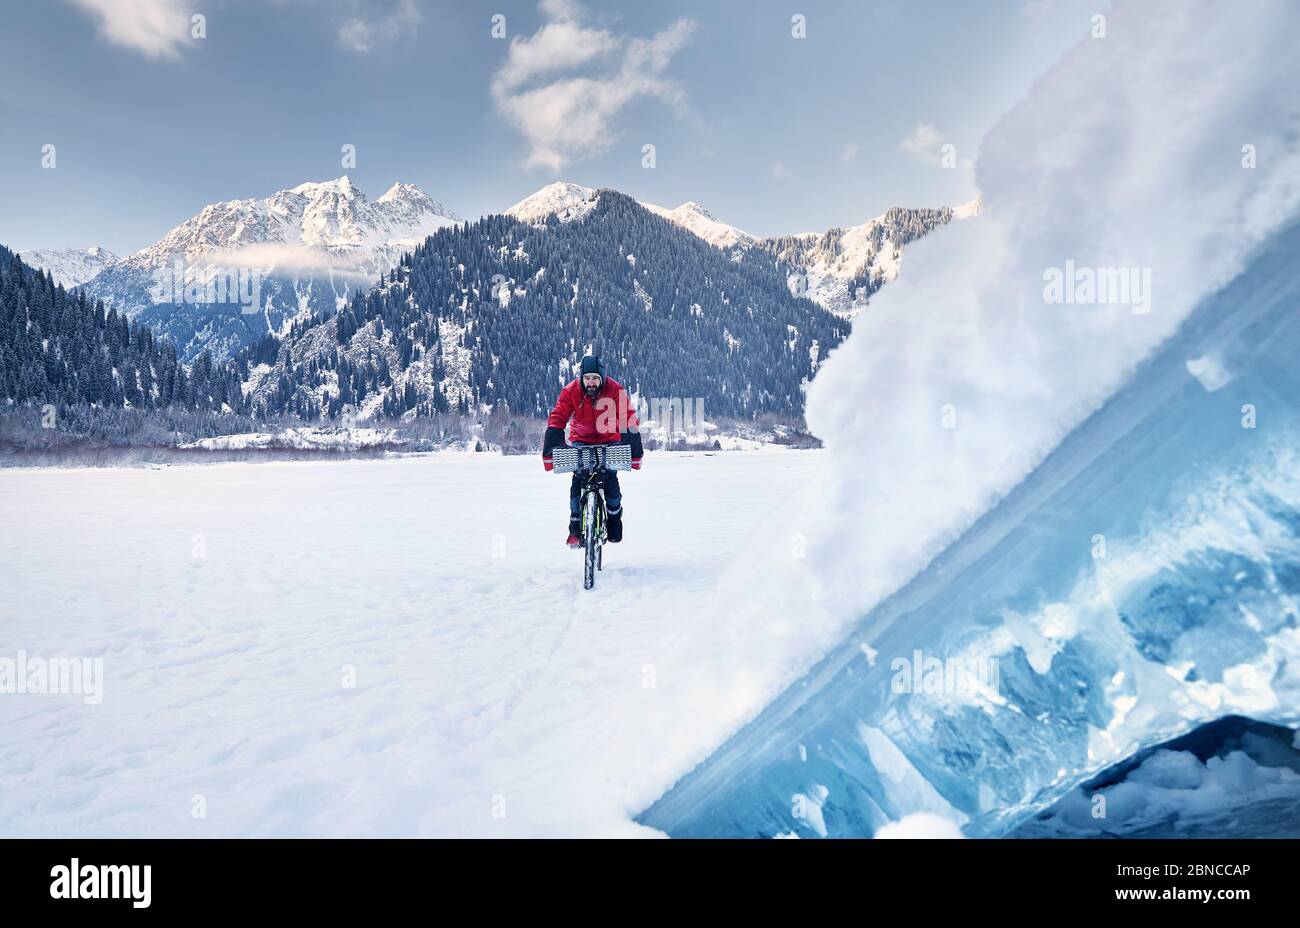 Der Mann in roter Jacke fährt sein Fahrrad am gefrorenen See mit blauem Eis im Vordergrund in verschneiten Bergen im Hintergrund Stockfoto